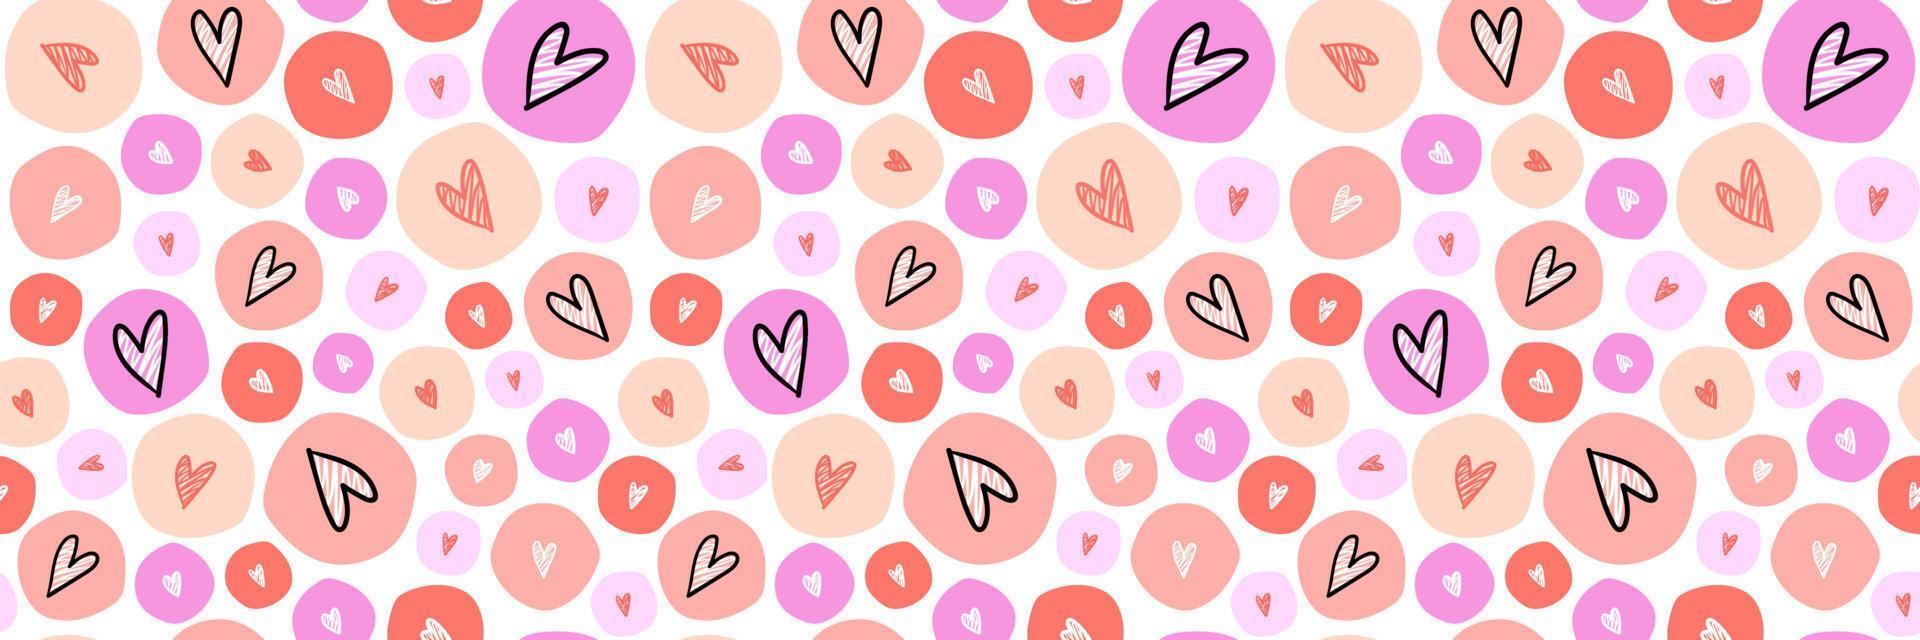 kleurrijk bubbels met schetsen harten naadloos patroon. meisjesachtig ontwerp voor oppervlak, textiel, inpakken, ansichtkaart, uitnodiging. valentijnsdag dag afdrukken. vector illustratie.